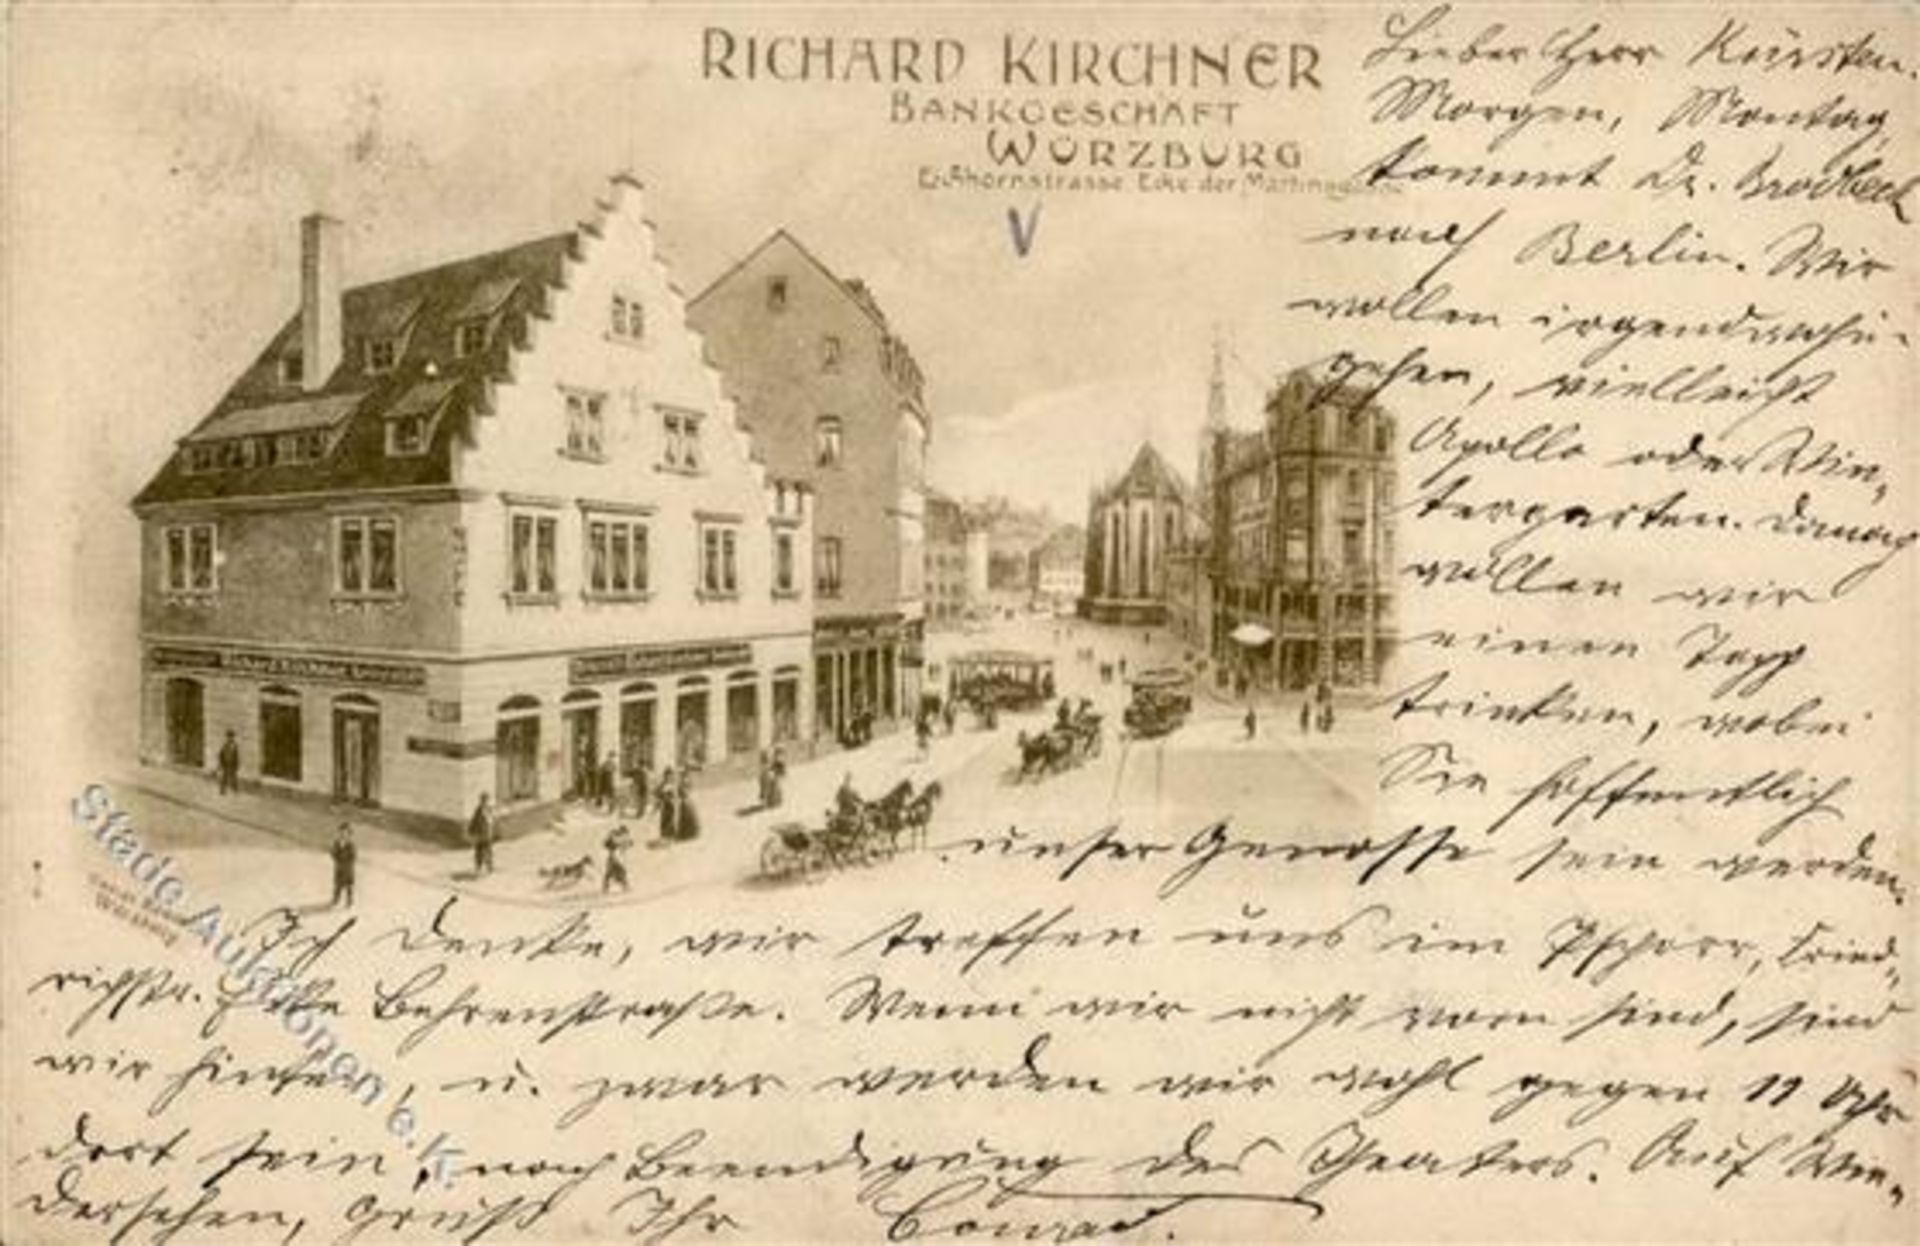 WÜRZBURG (8700) - Bankgeschäft Richard Kirchner - Eichhornstrasse I-IIDieses Los wird in einer